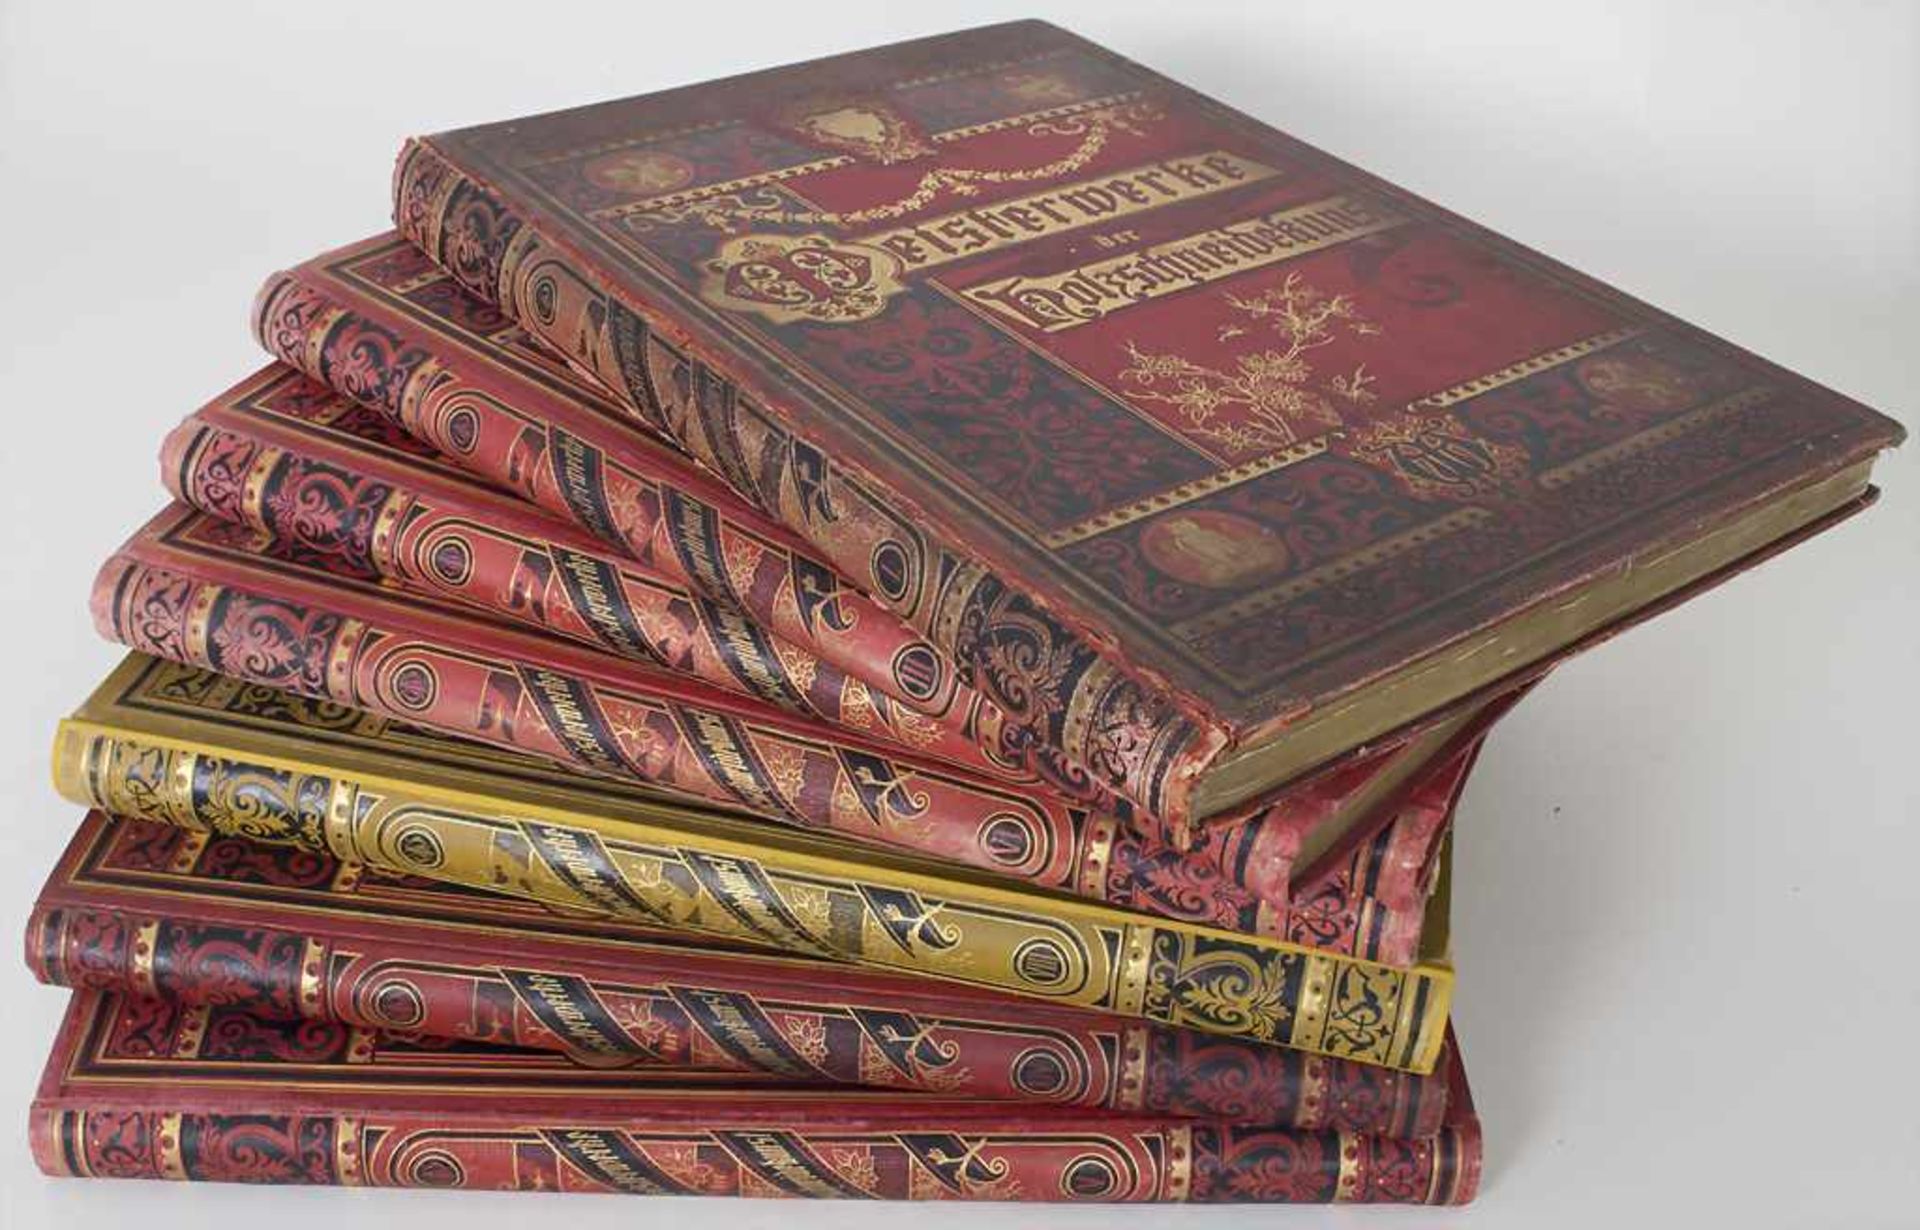 7 Bände 'Meisterwerke der Holzschneidekunst' / A set of 7 volumes of 'Meisterwerke der